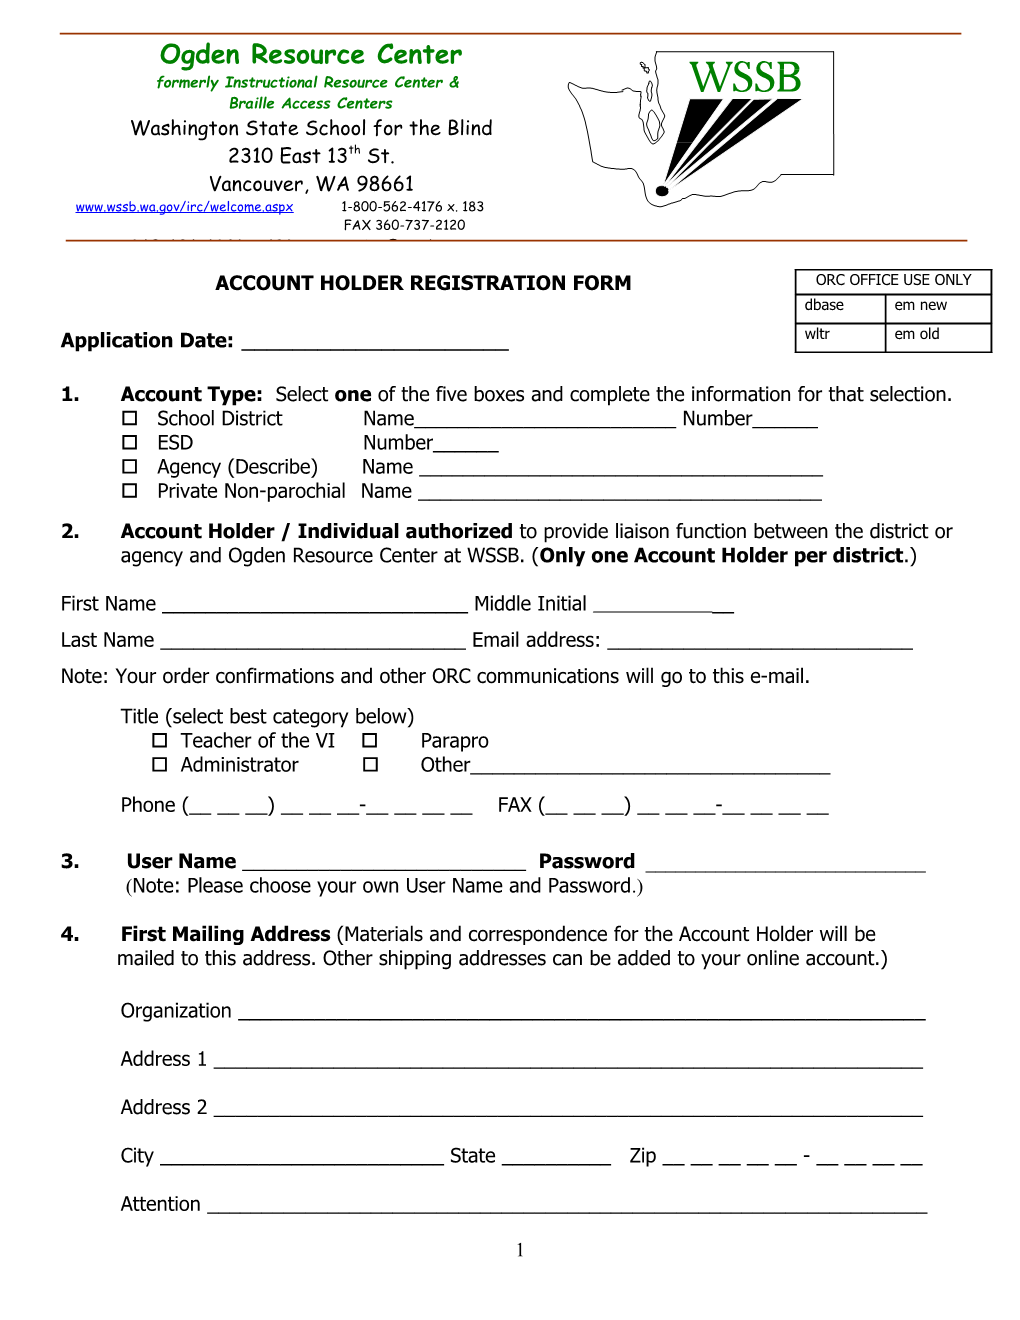 Account Holder Registration Form